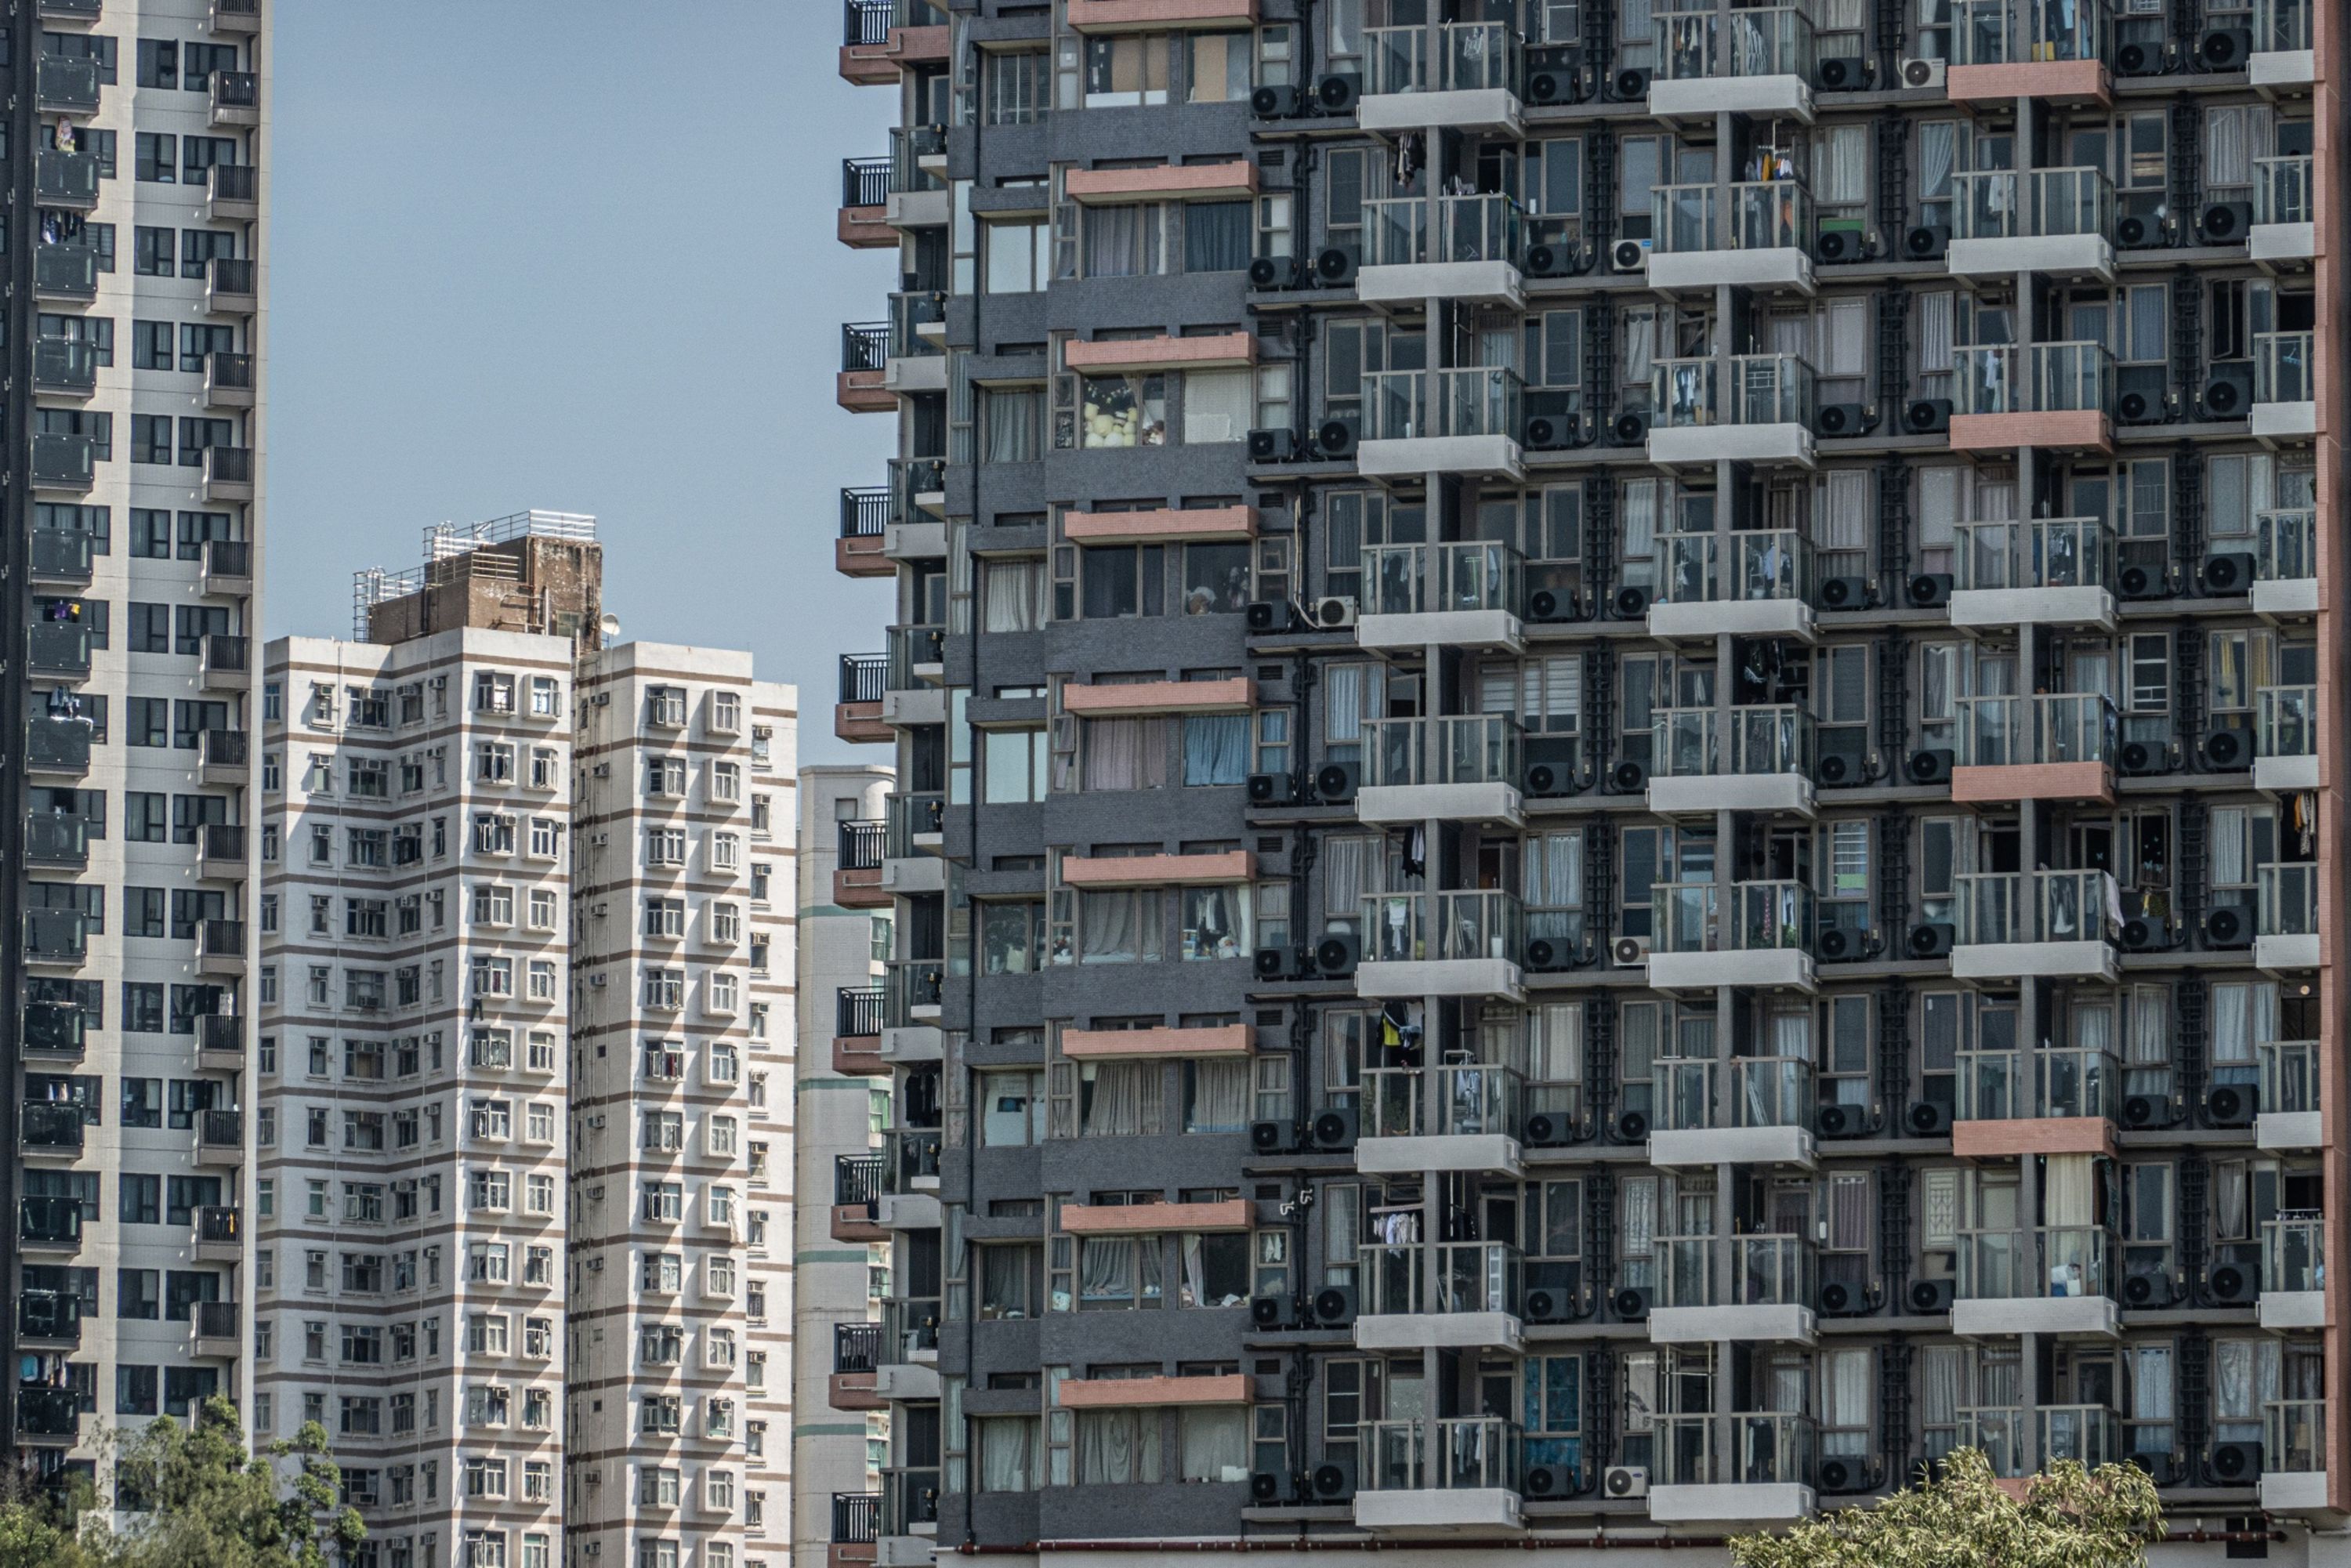 Tại sao Hồng Kông lại xây các căn hộ nhỏ bằng chỗ đậu xe?